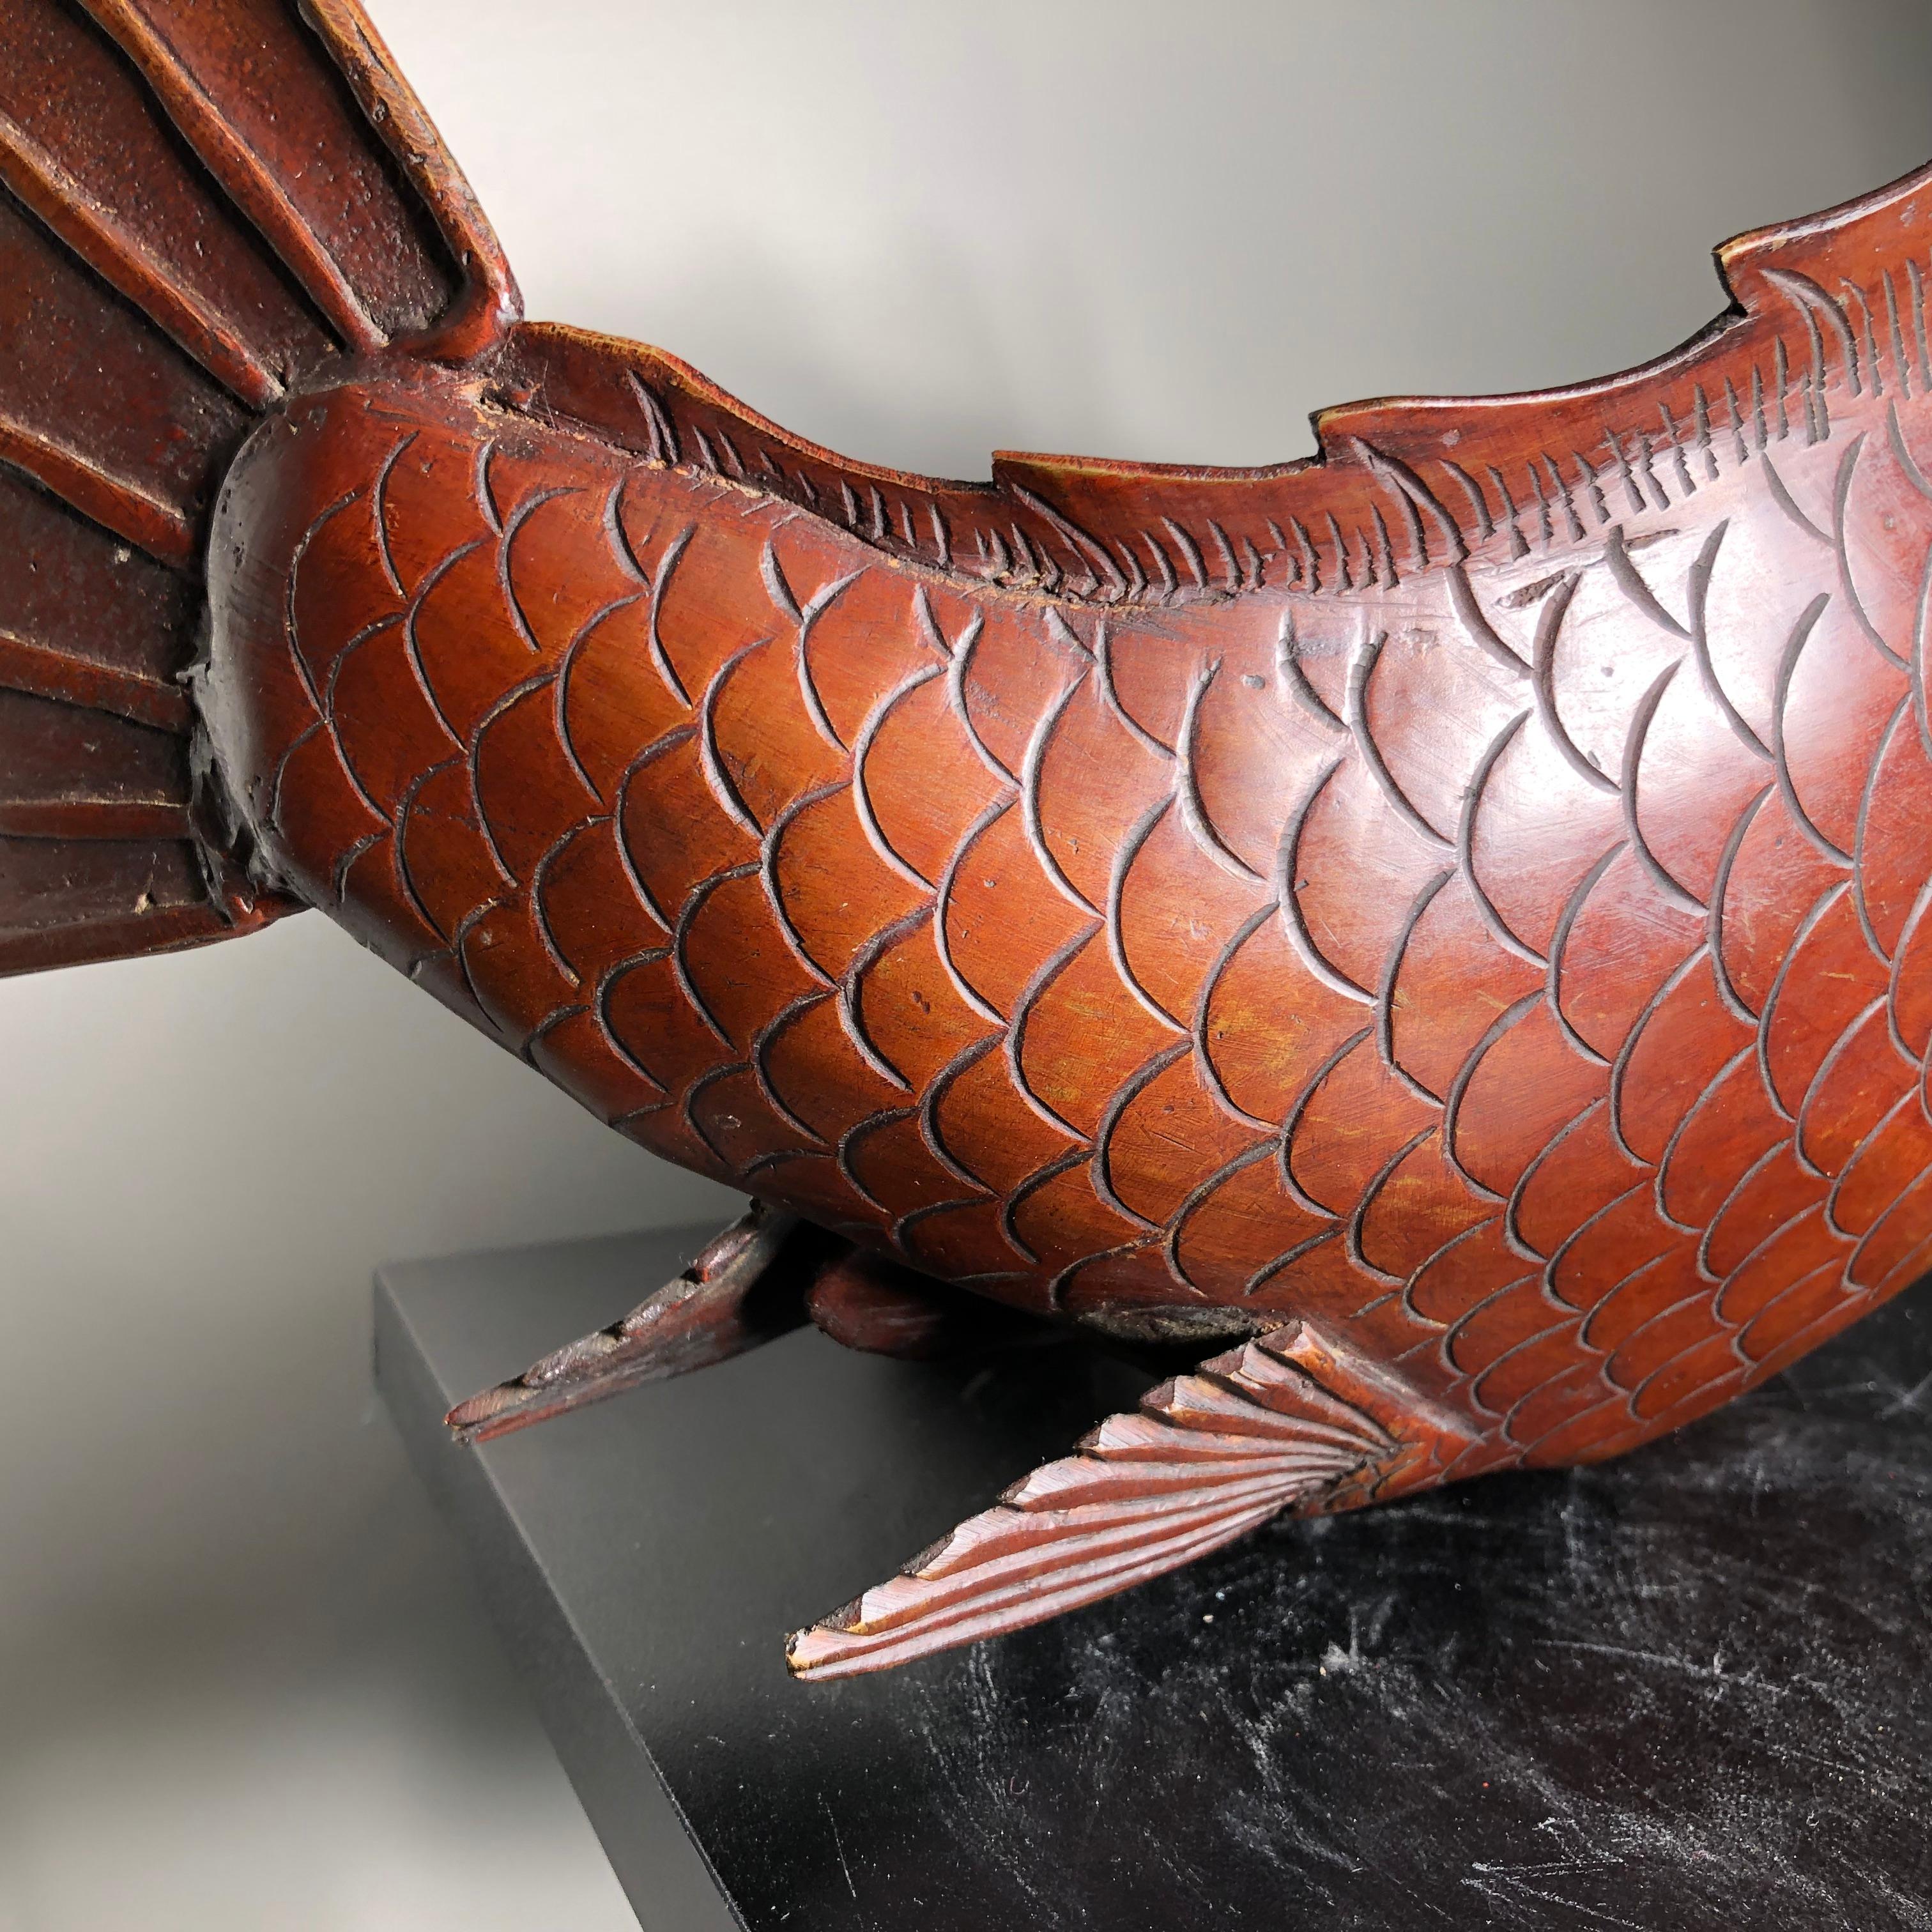 Japanische Riesige Antike Bronze Koi Trophäe Fisch -Gold vergoldet:: Glücksbringer 2